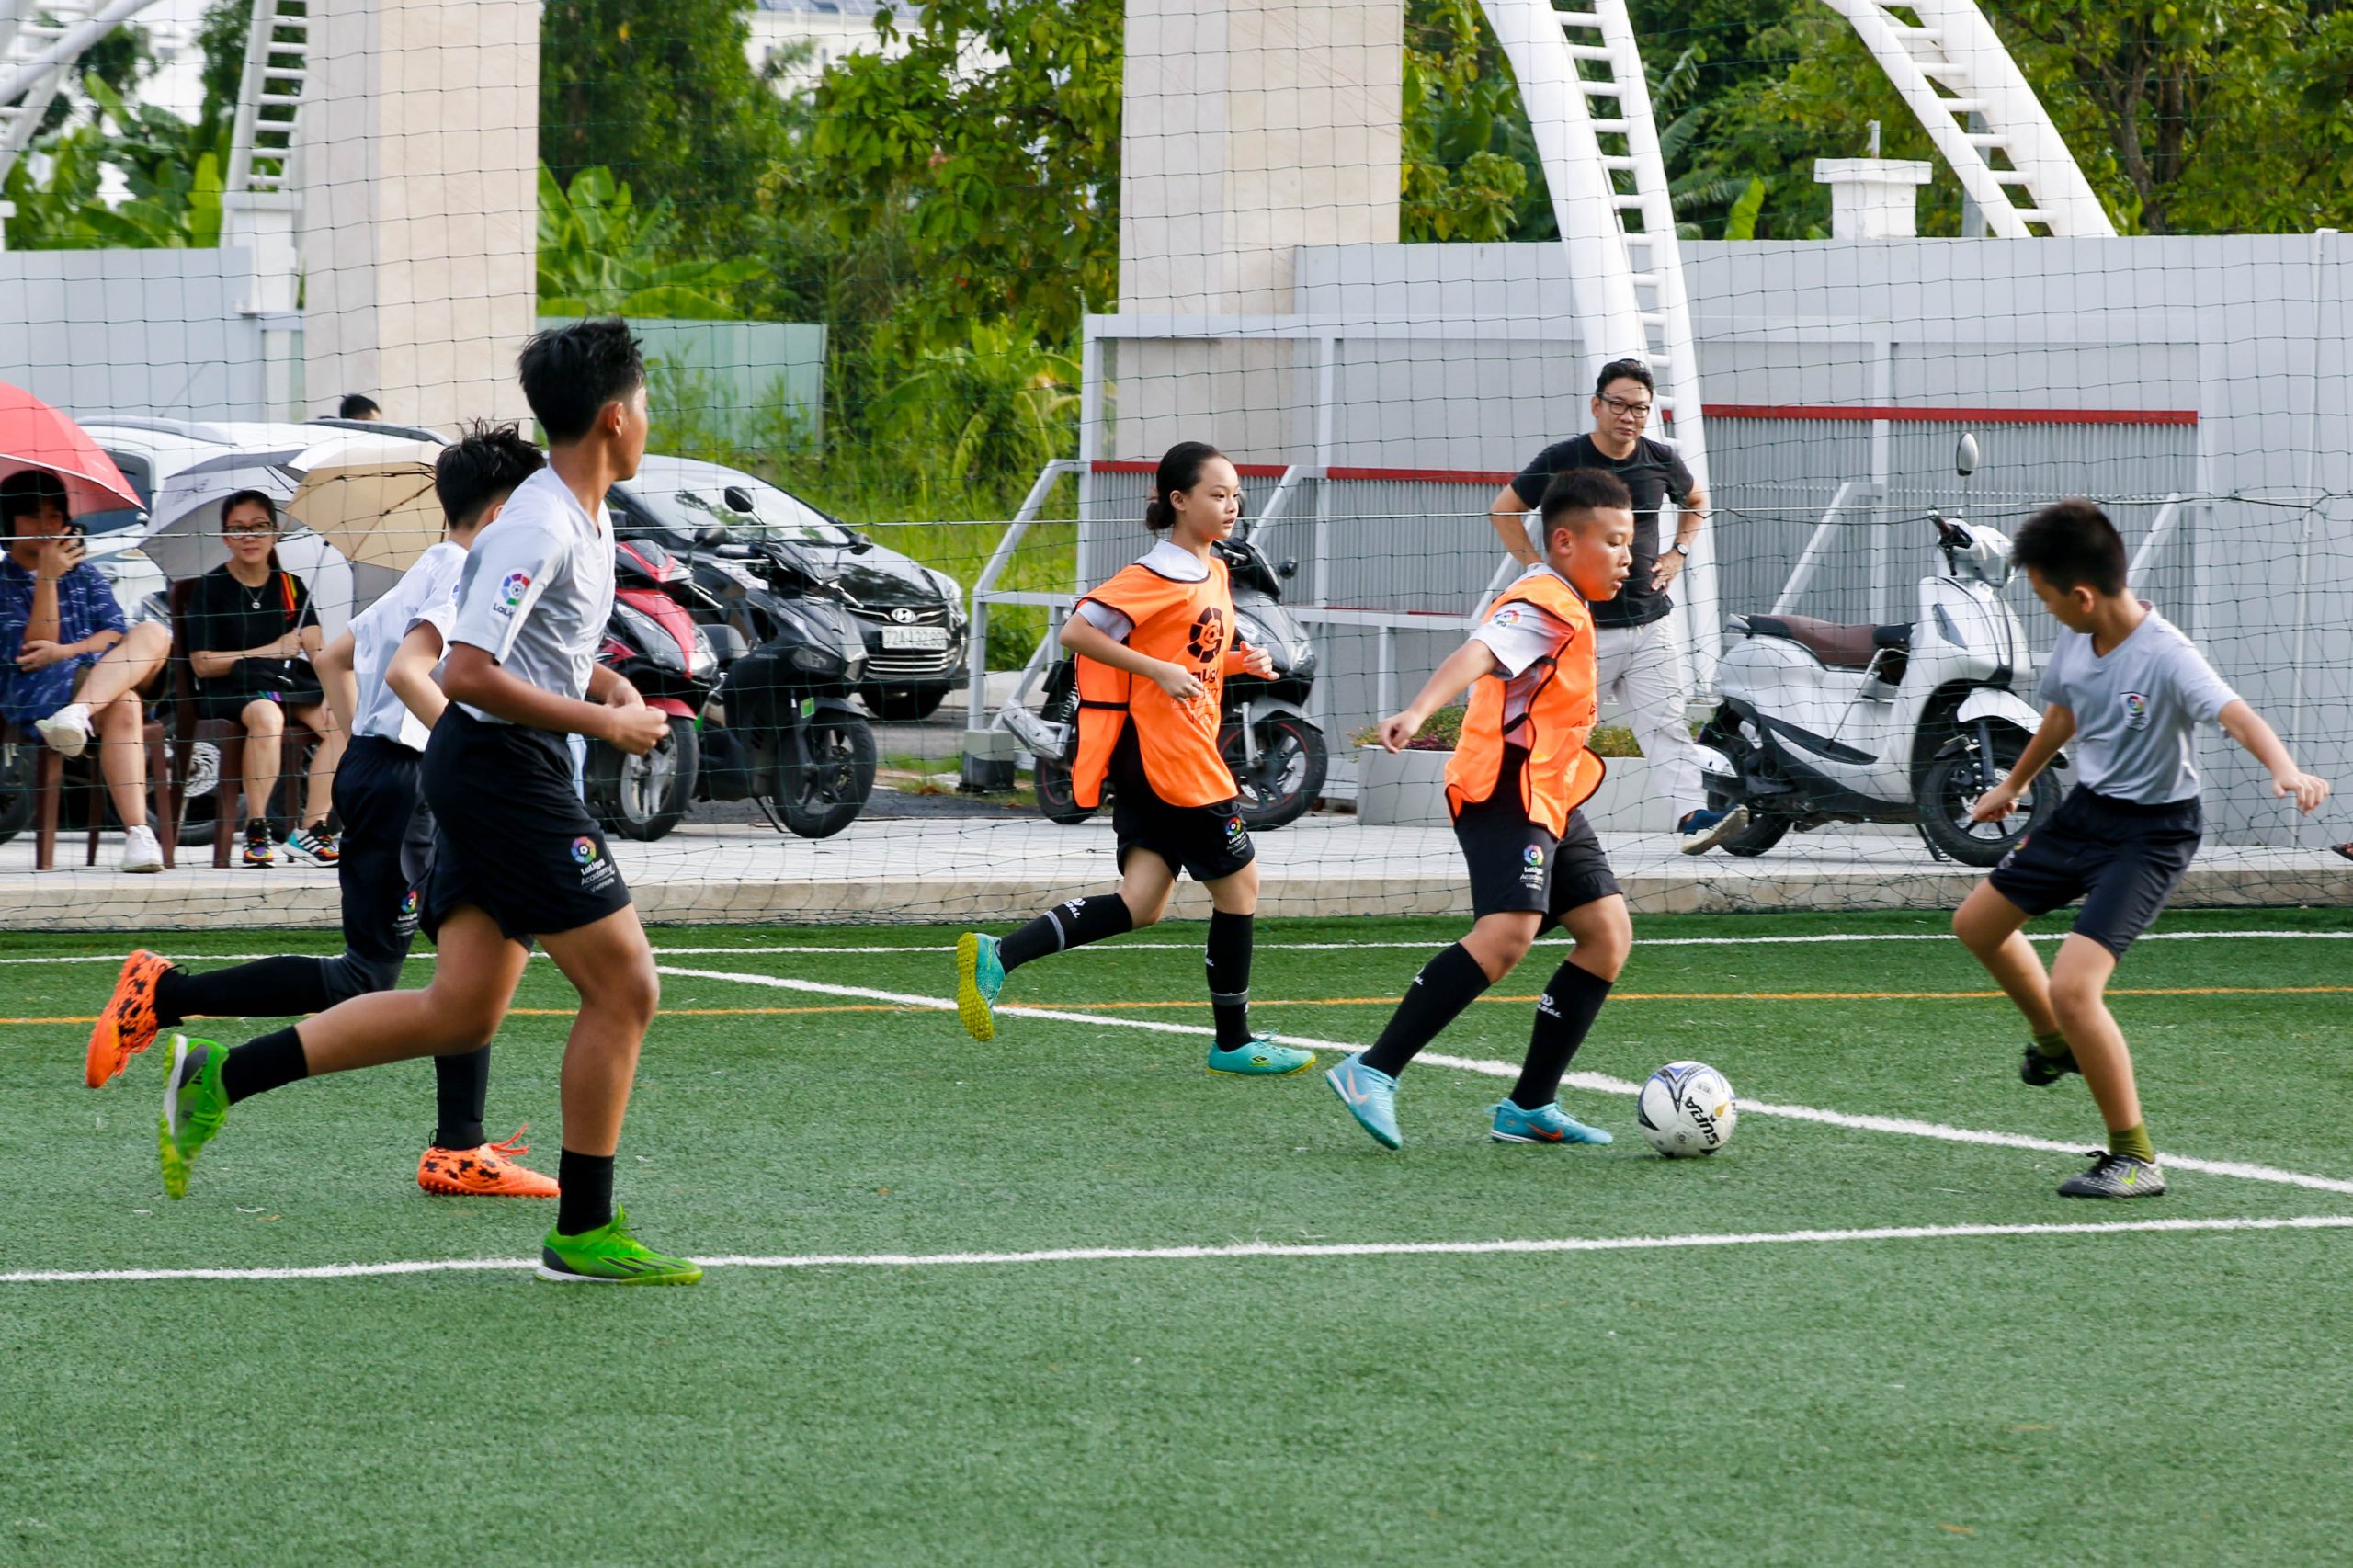 IMG 9857 1 scaled | Laliga Việt Nam - Ươm mầm tài năng bóng đá trẻ